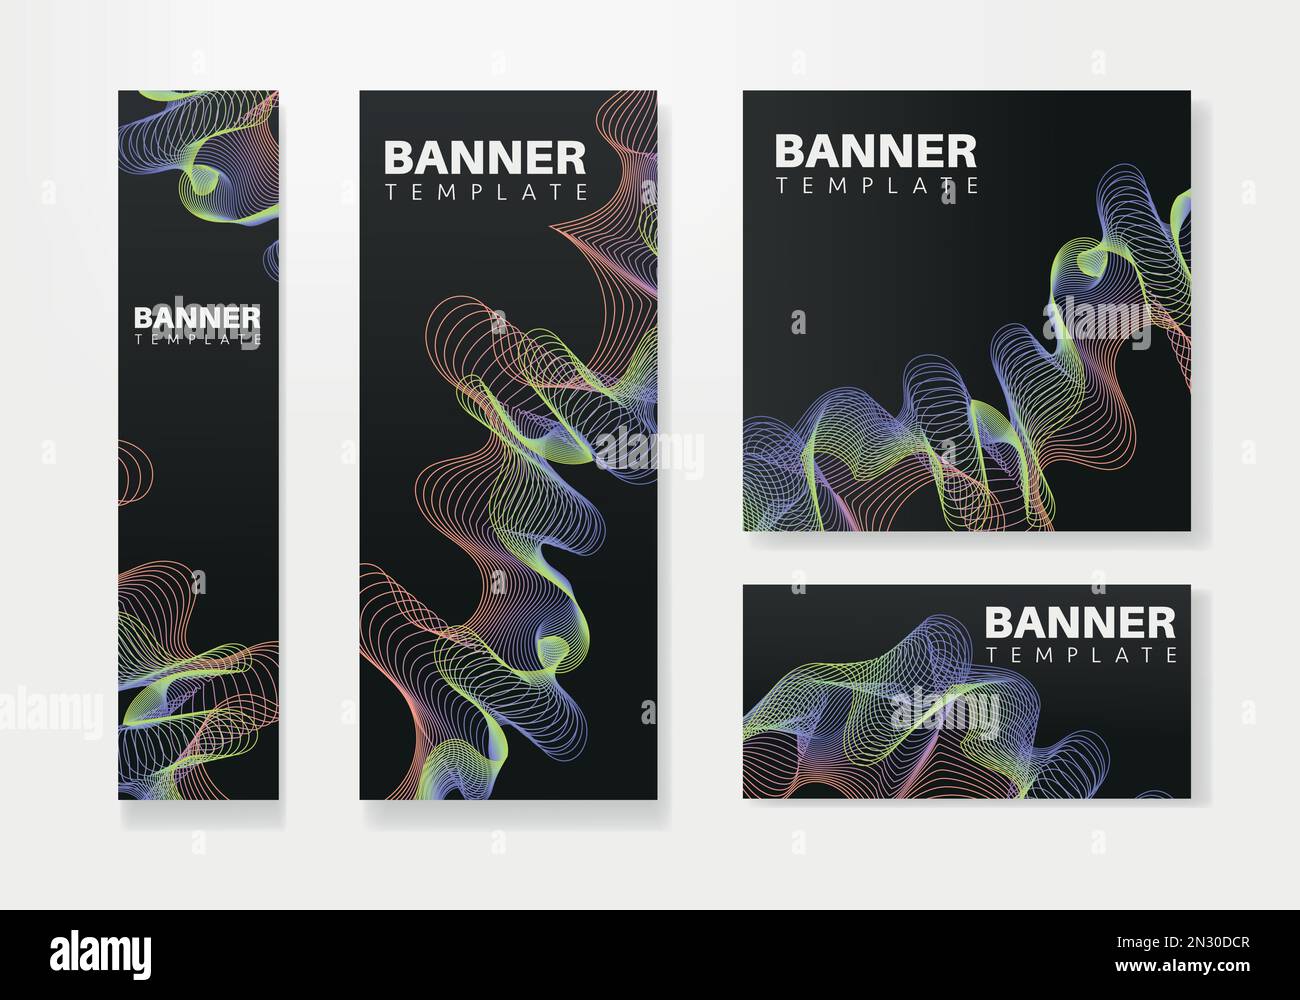 Modernes Bannerdesign Webvorlage Set, Webbanner. Hintergrund für Website-Design, Social-Media-Cover-Werbebanner, Flyer, Einladungskarte Stock Vektor